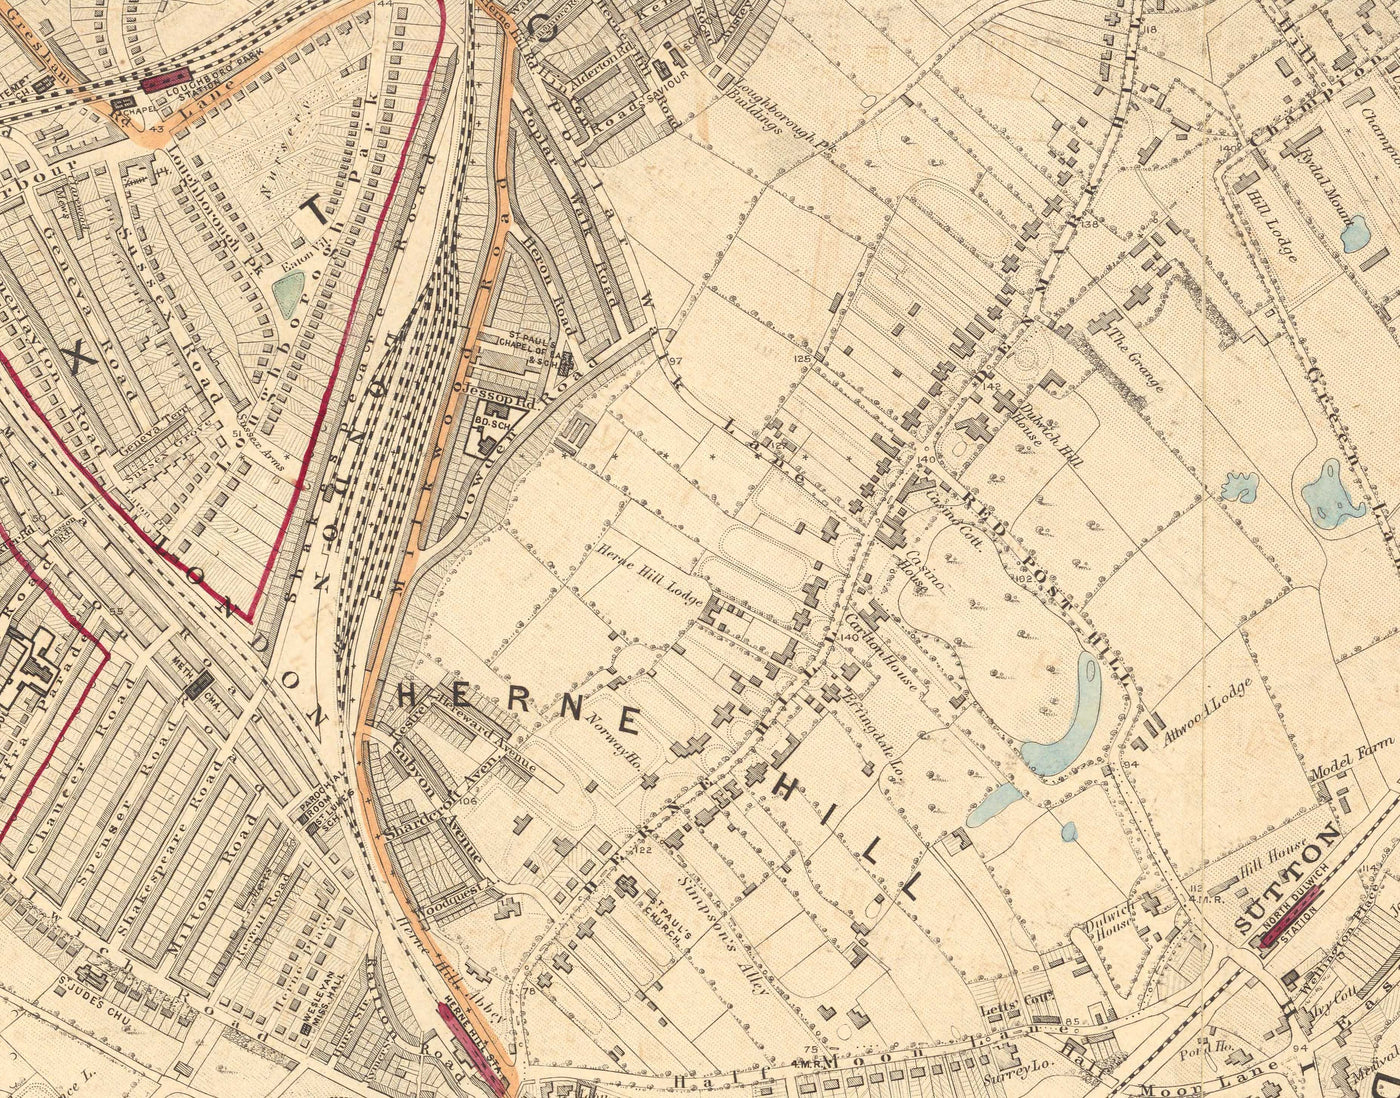 Ancienne carte en couleur du sud de Londres en 1891 - Dulwich, Peckham Rye, Herne Hill, Forest Hill - SE24, SE22, SE21, SE23